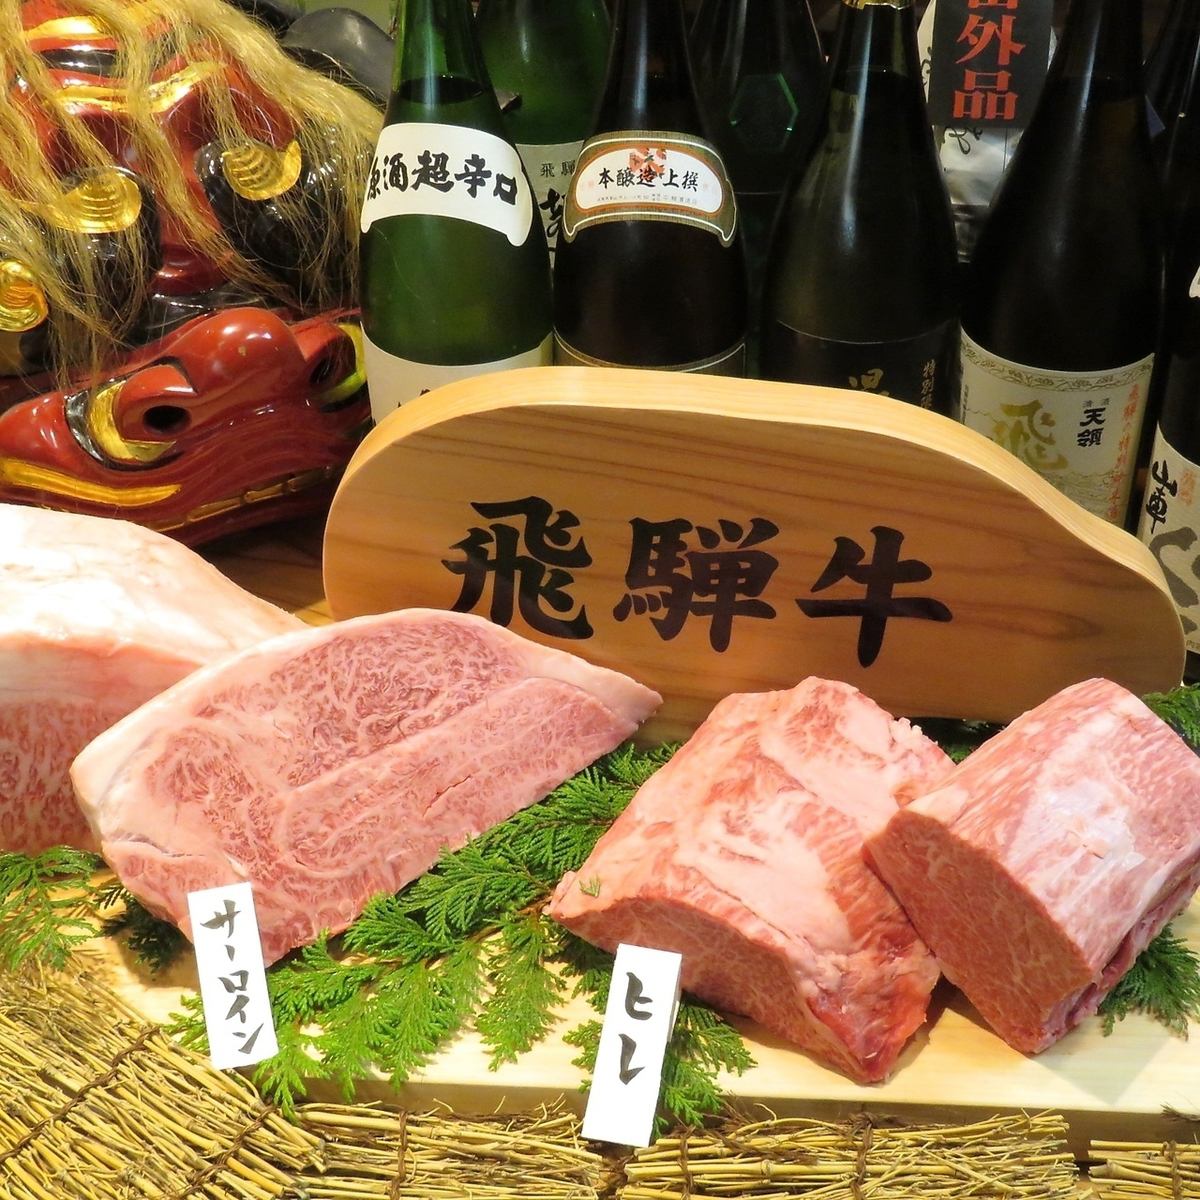 仙台では珍しい飛騨牛を使用したお料理をご提供しております◎